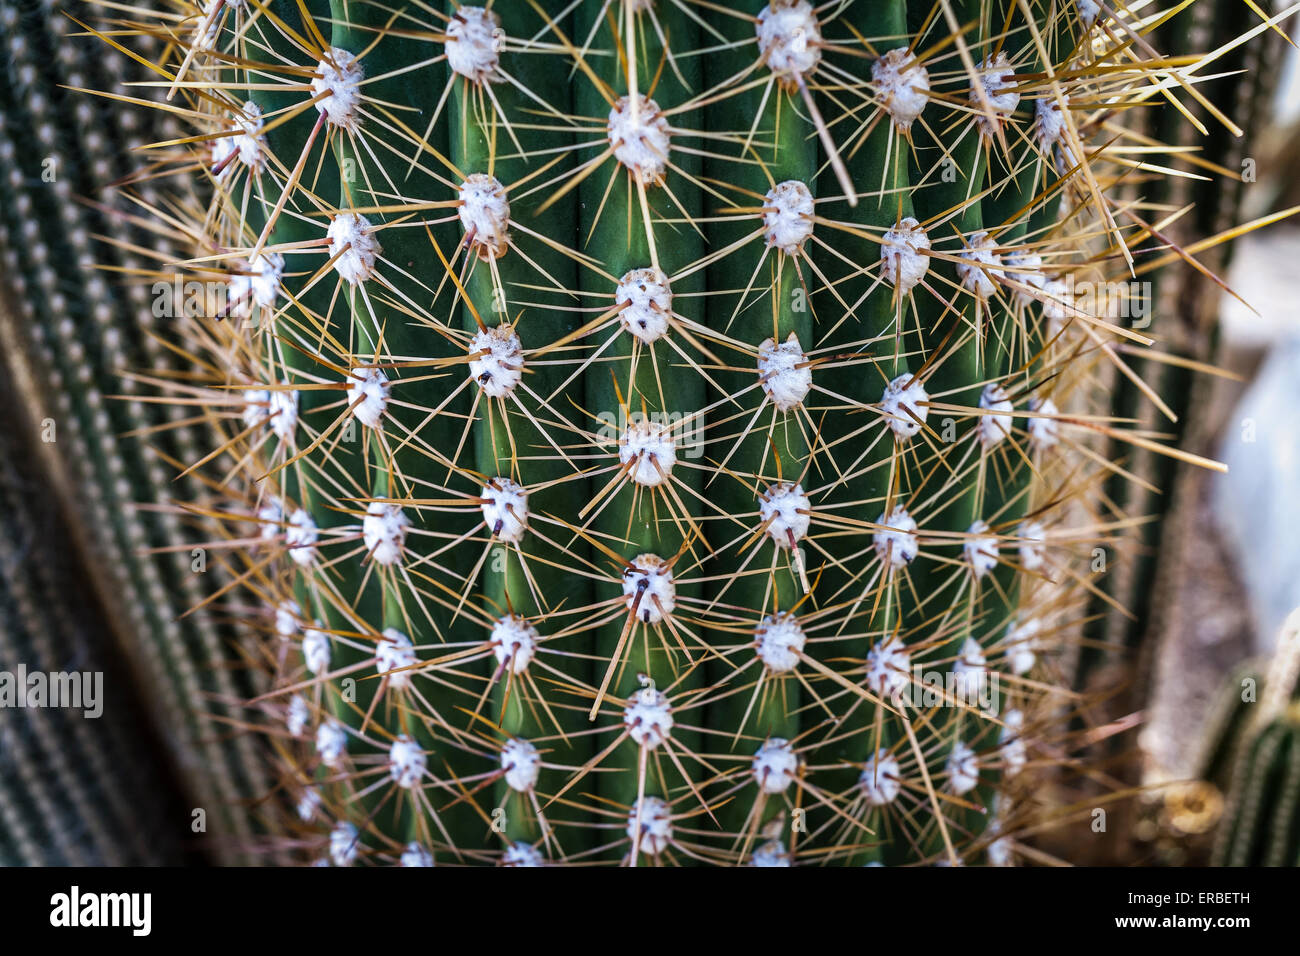 Cactus close-up taken at Kew Gardens Stock Photo